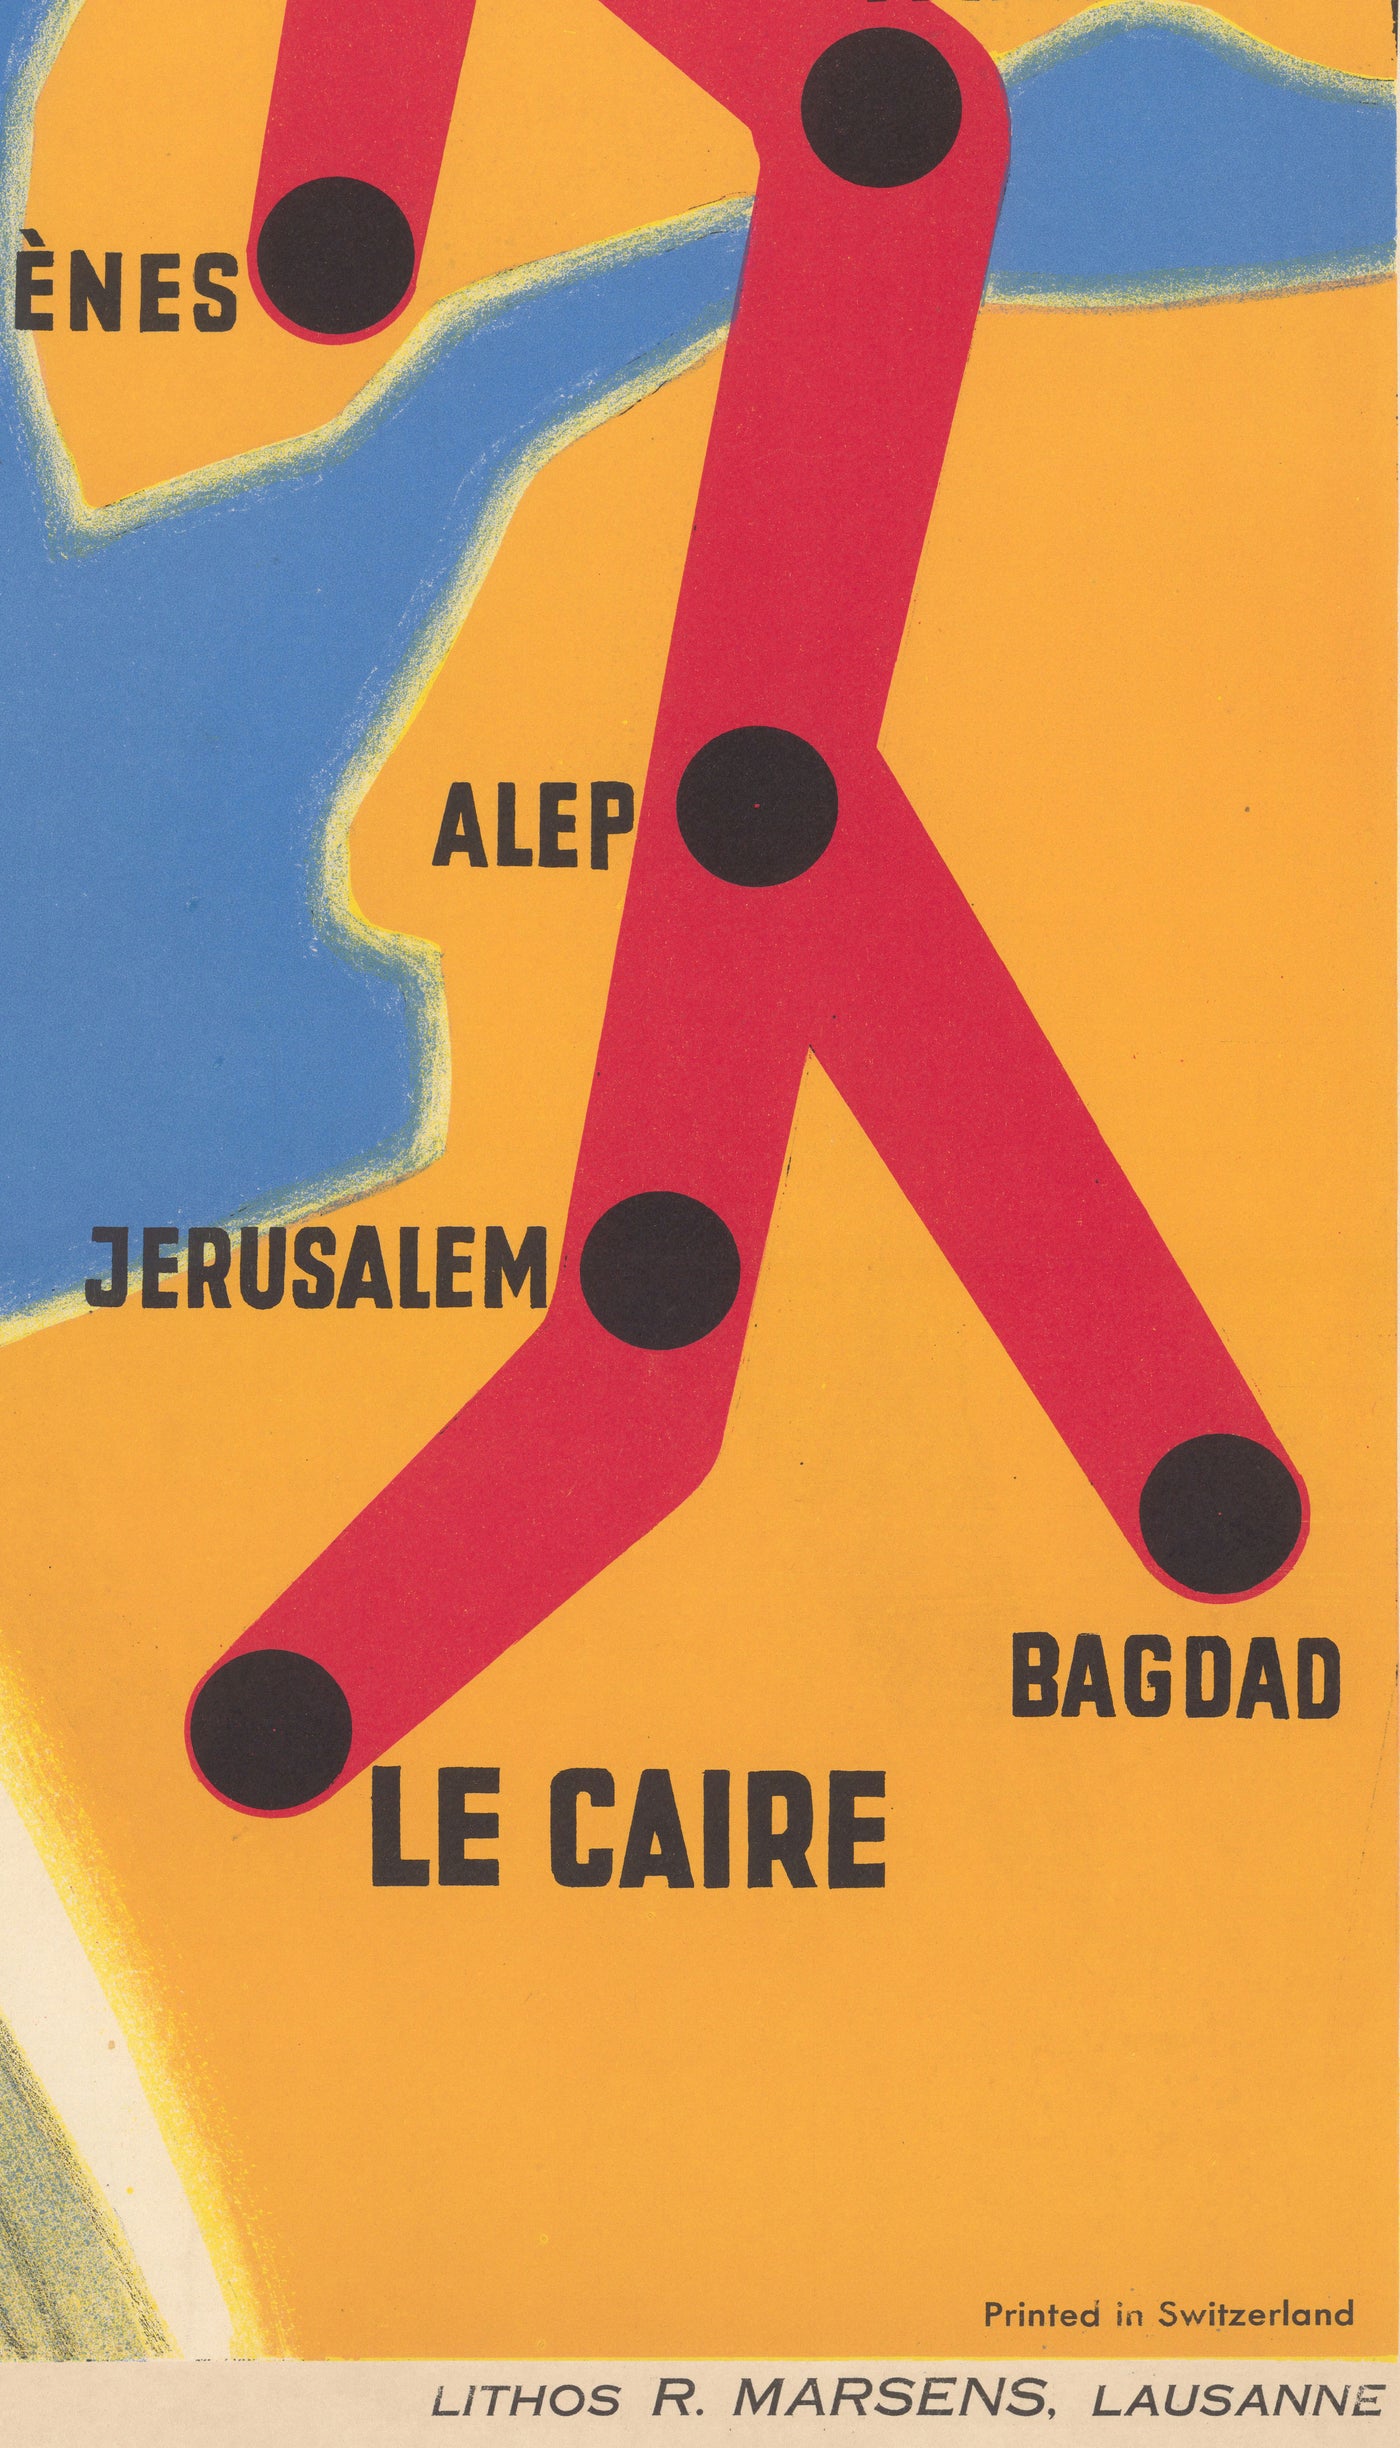 Ancienne carte-affiche du chemin de fer Orient Express, 1947 par Walther Spinner - Simplon, Paris, Lausanne, Genève, Venise, Londres, Le Caire